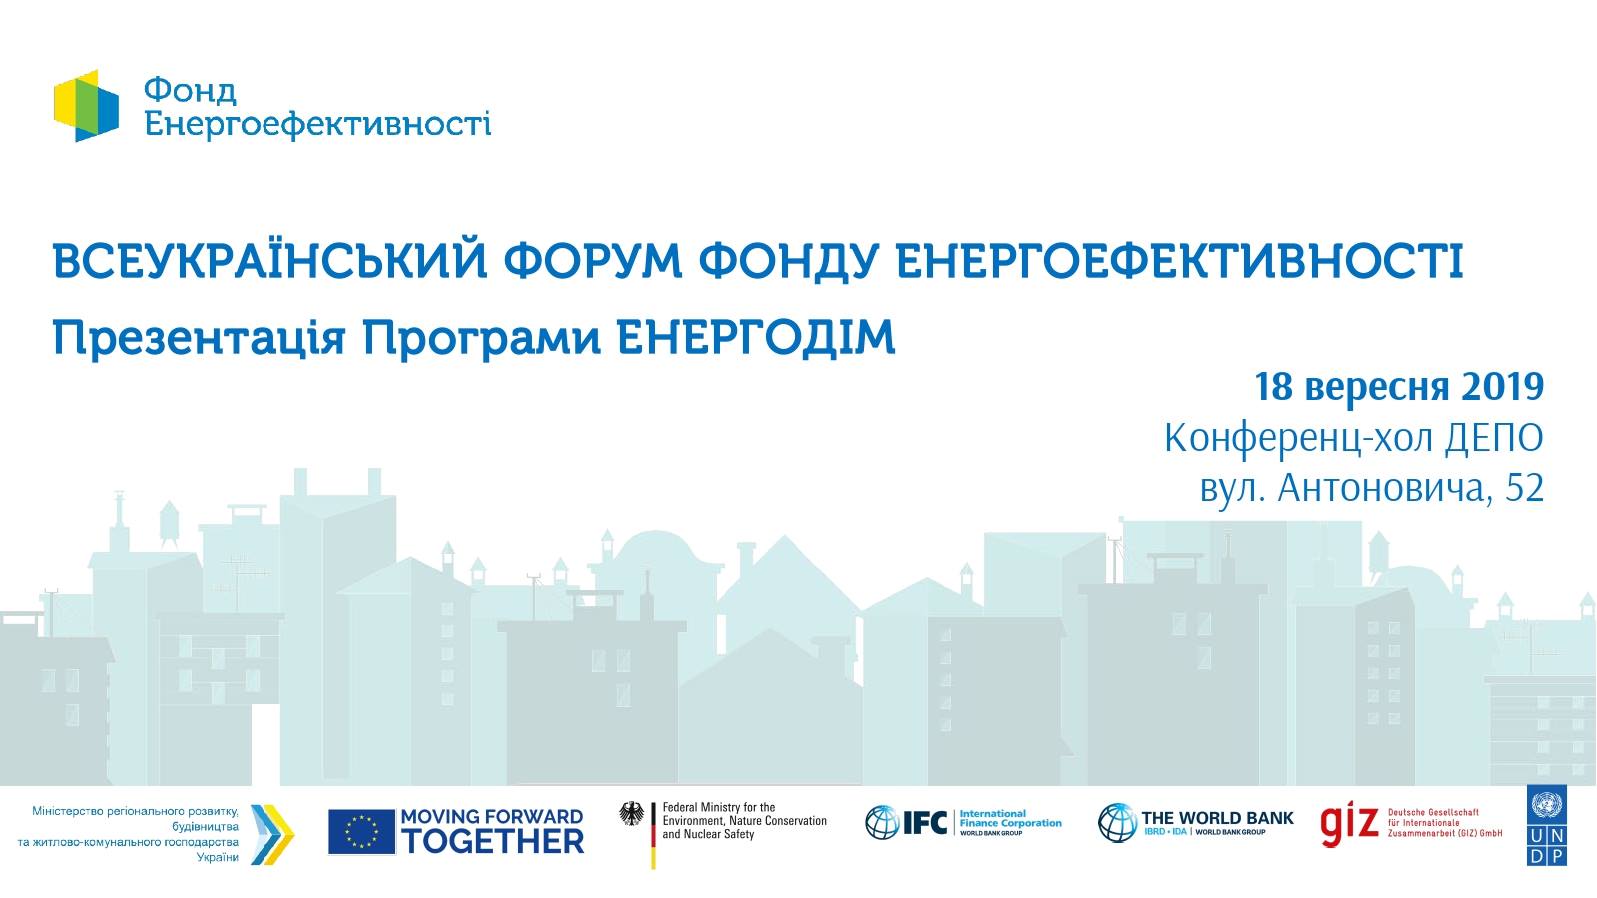 18 вересня відбудеться Всеукраїнський Форум Фонду енергоефективності